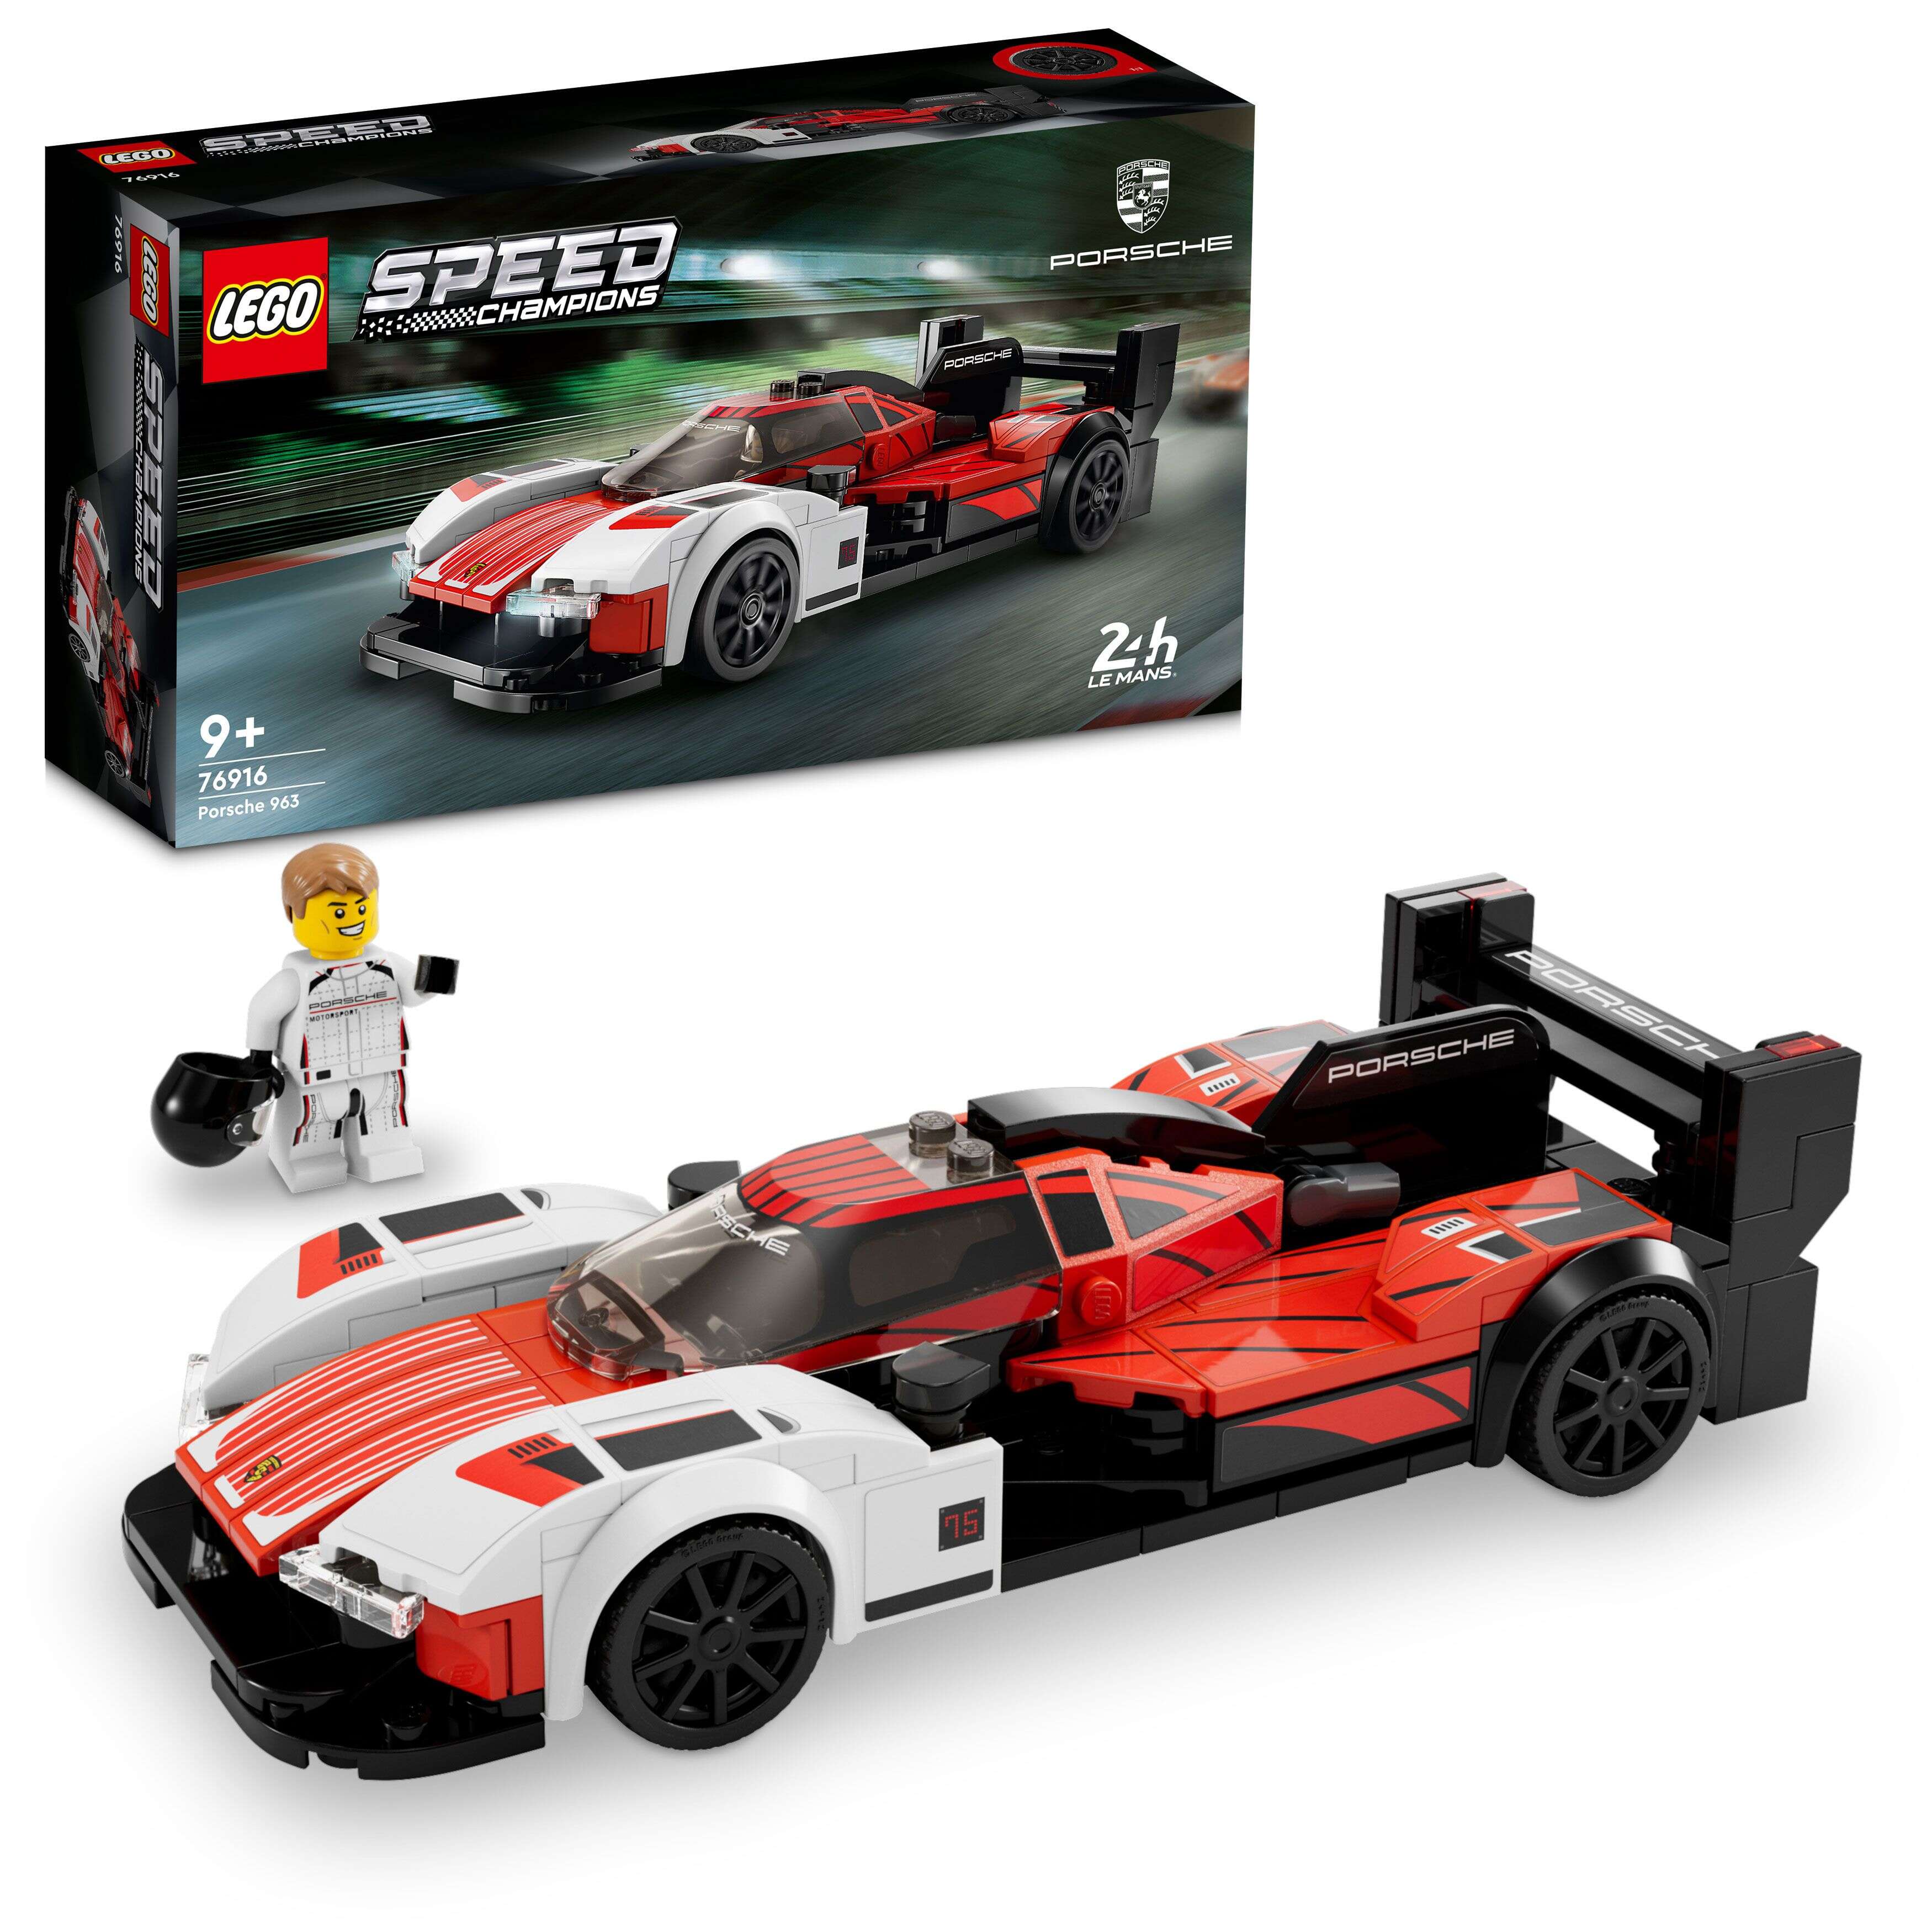 LEGO 76916 Speed Champions Porsche 963, 1 Minifigur, zum Spielen und Ausstellen